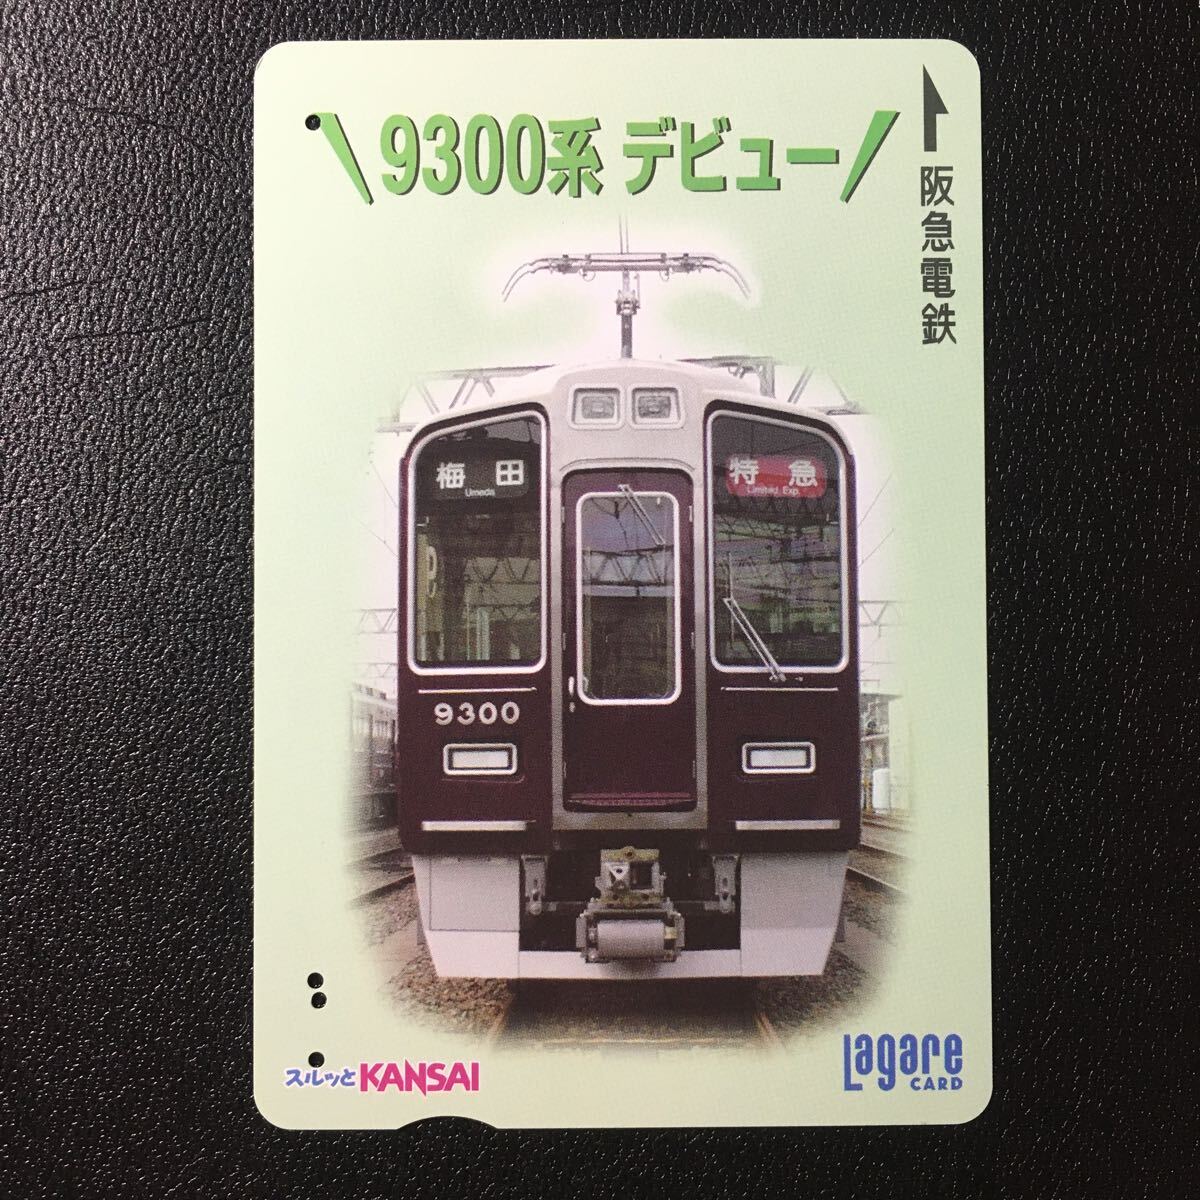 2003年9月25日発売柄ー「9300系デビュー」ー阪急ラガールカード(使用済スルッとKANSAI)_画像1